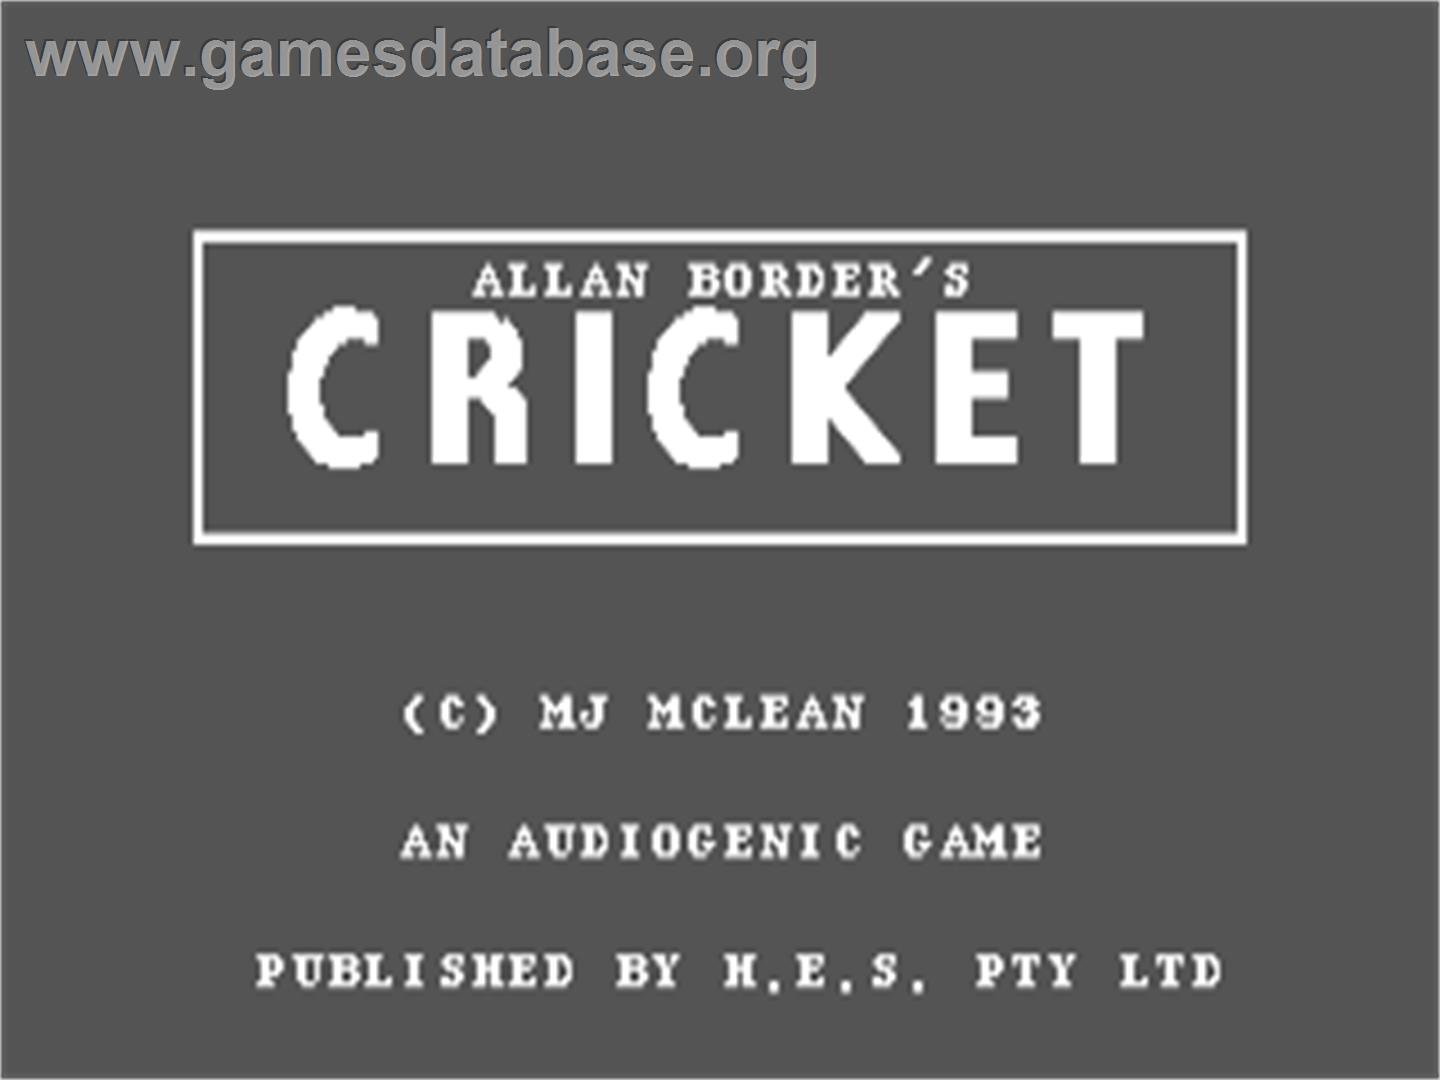 Allan Border's Cricket - Commodore 64 - Artwork - Title Screen